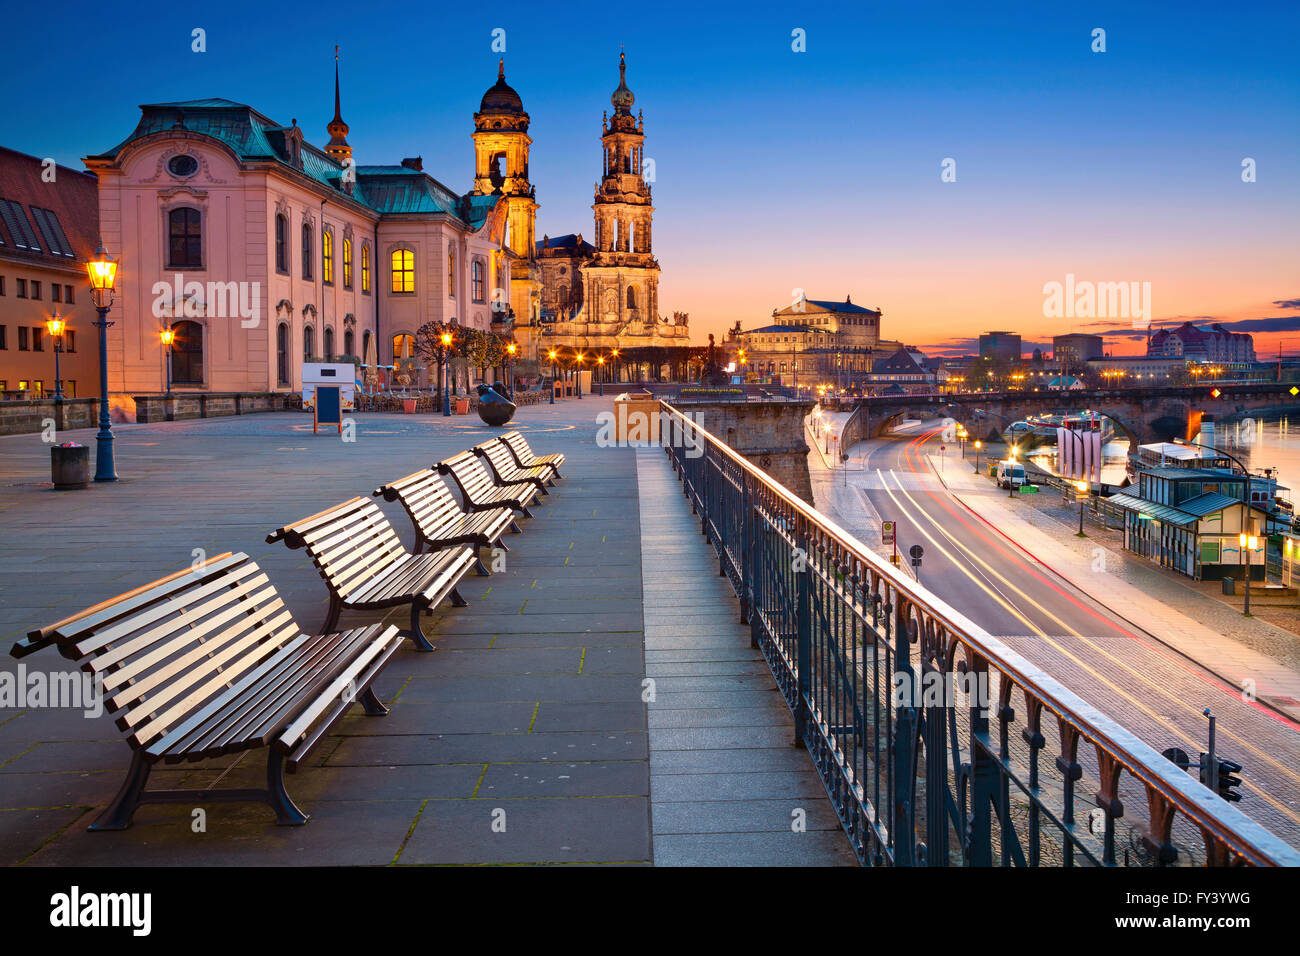 Dresde. Image de Dresde, Allemagne pendant le crépuscule heure bleue. Banque D'Images